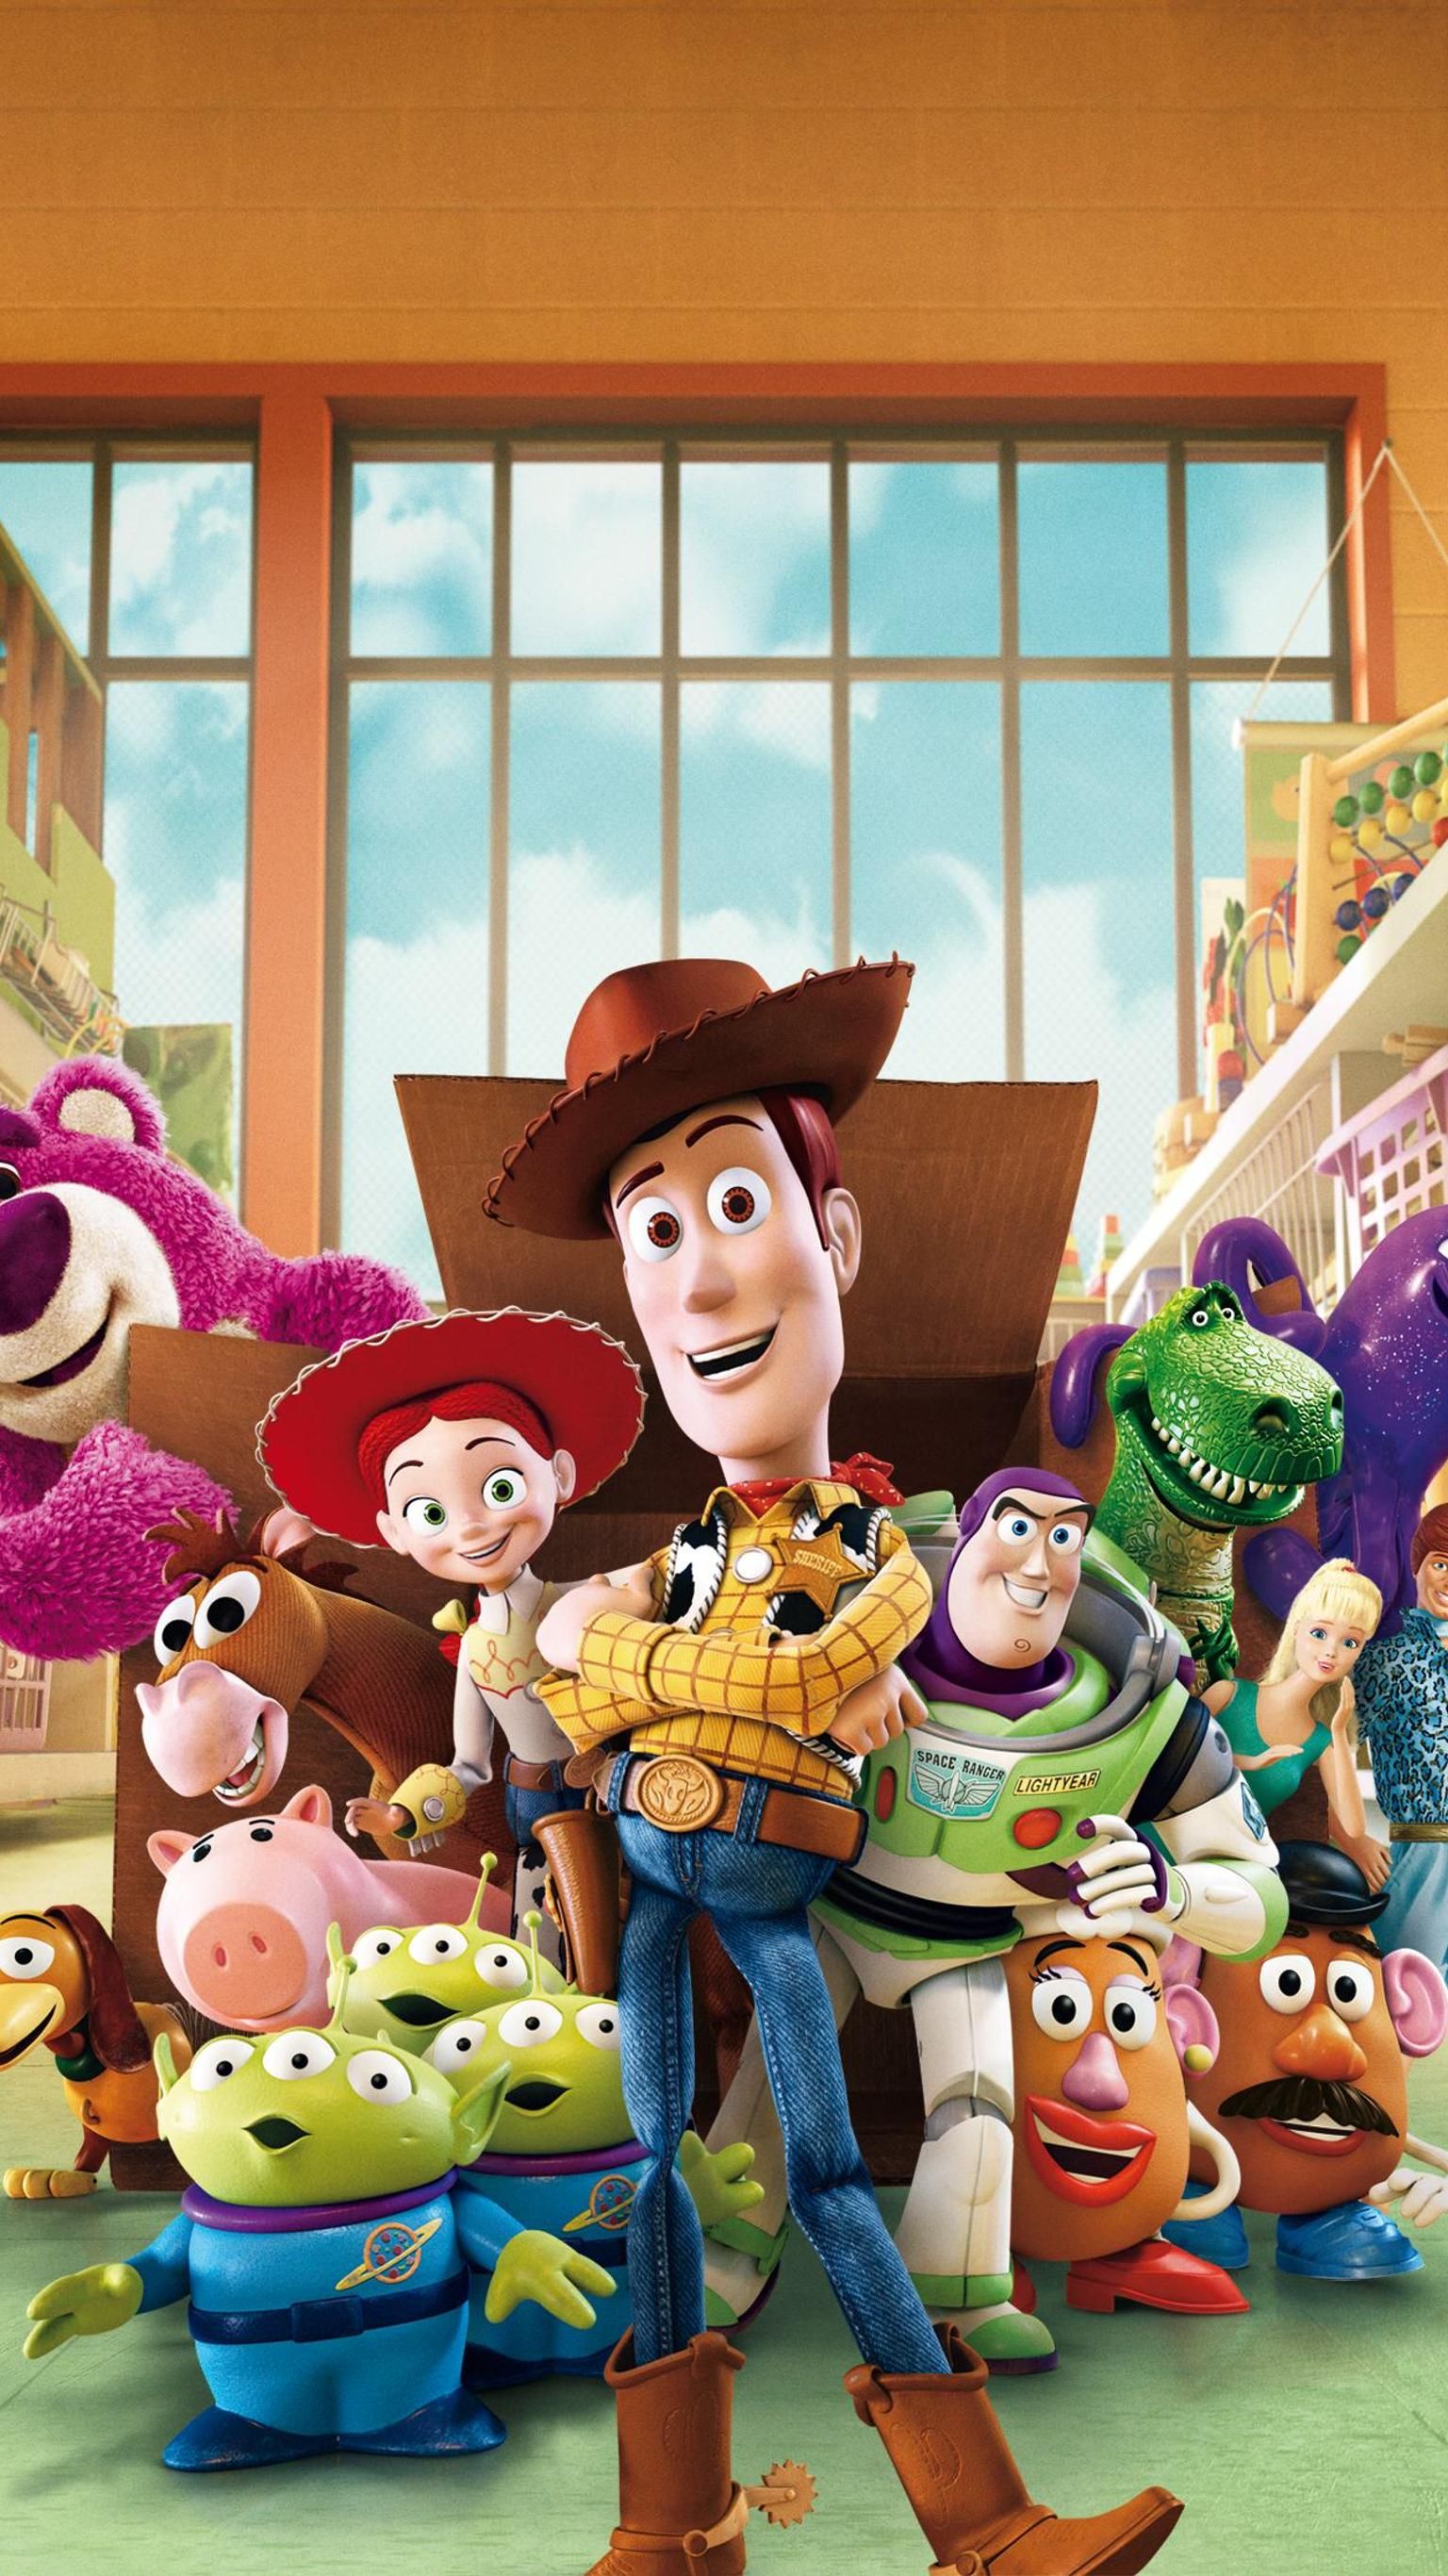 История игрушек дисней. История игрушек 3 большой побег. Disney Pixar Toy story 3 2010. История игрушек большой побег 2010 Toy story 3. Исрияигрушекбольшойпобег.